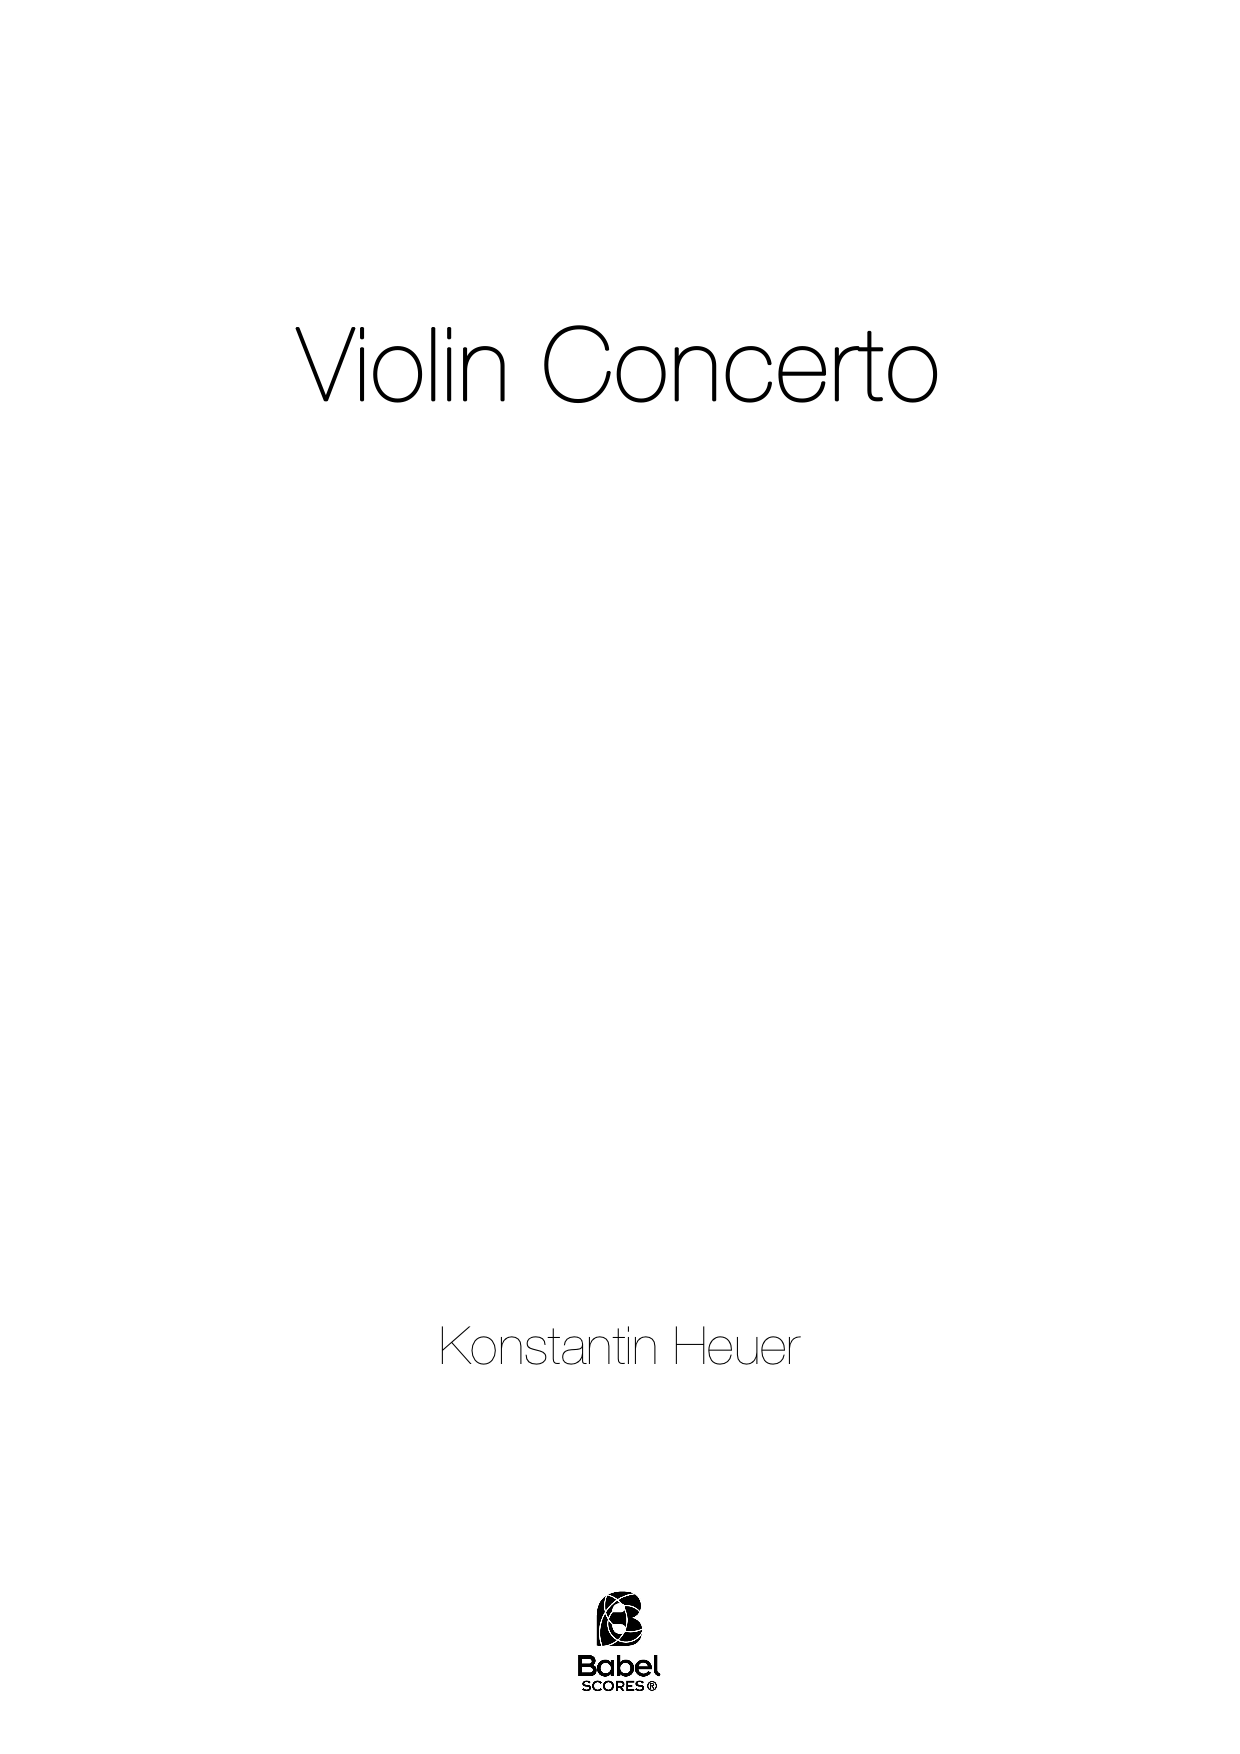 Violin concerto A4 z 2 1 256